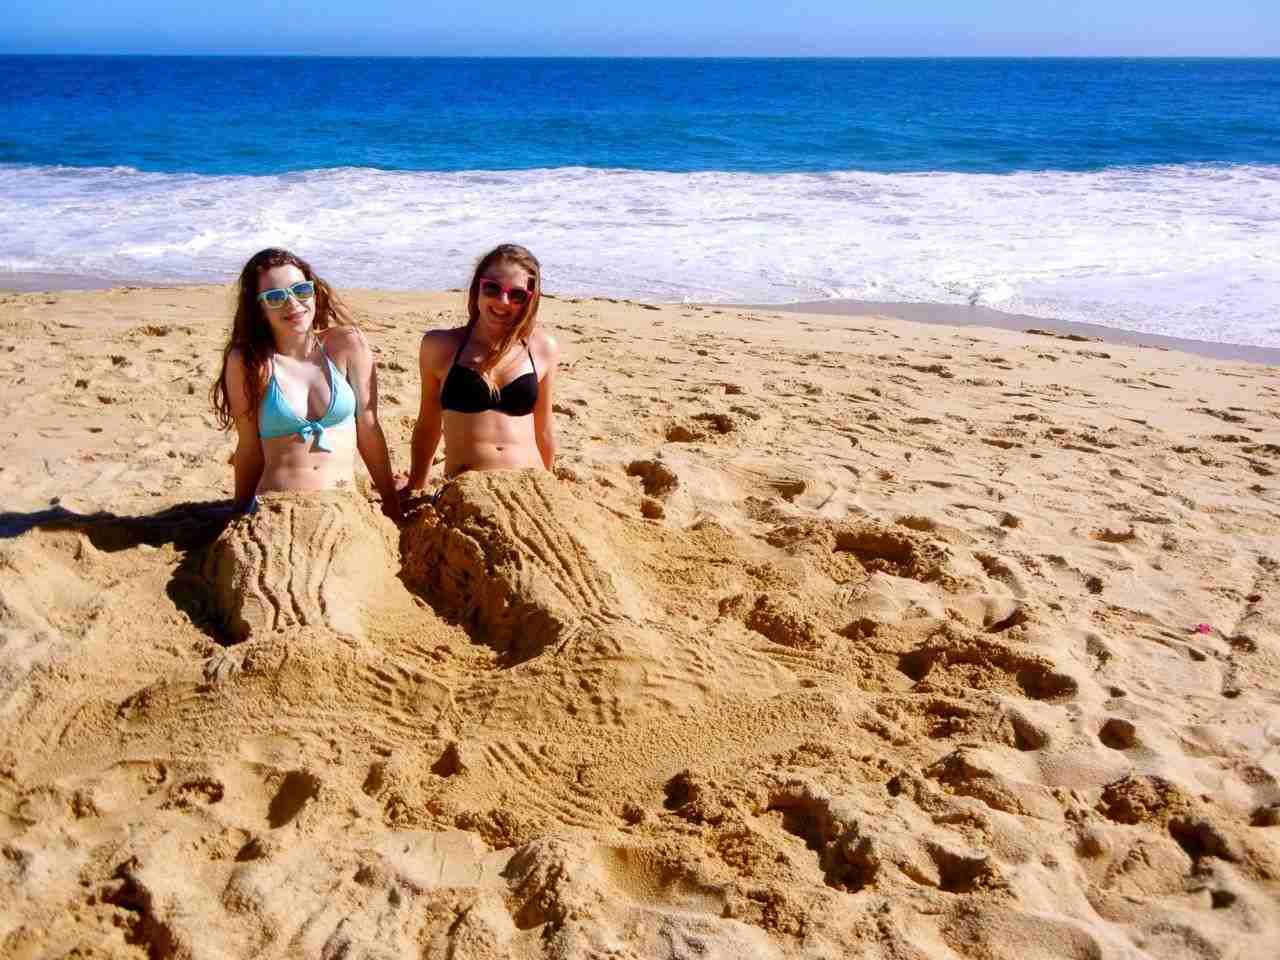 Aktivitäten am Strand Meerjungfrau aus Sand bauen Sommerurlaub